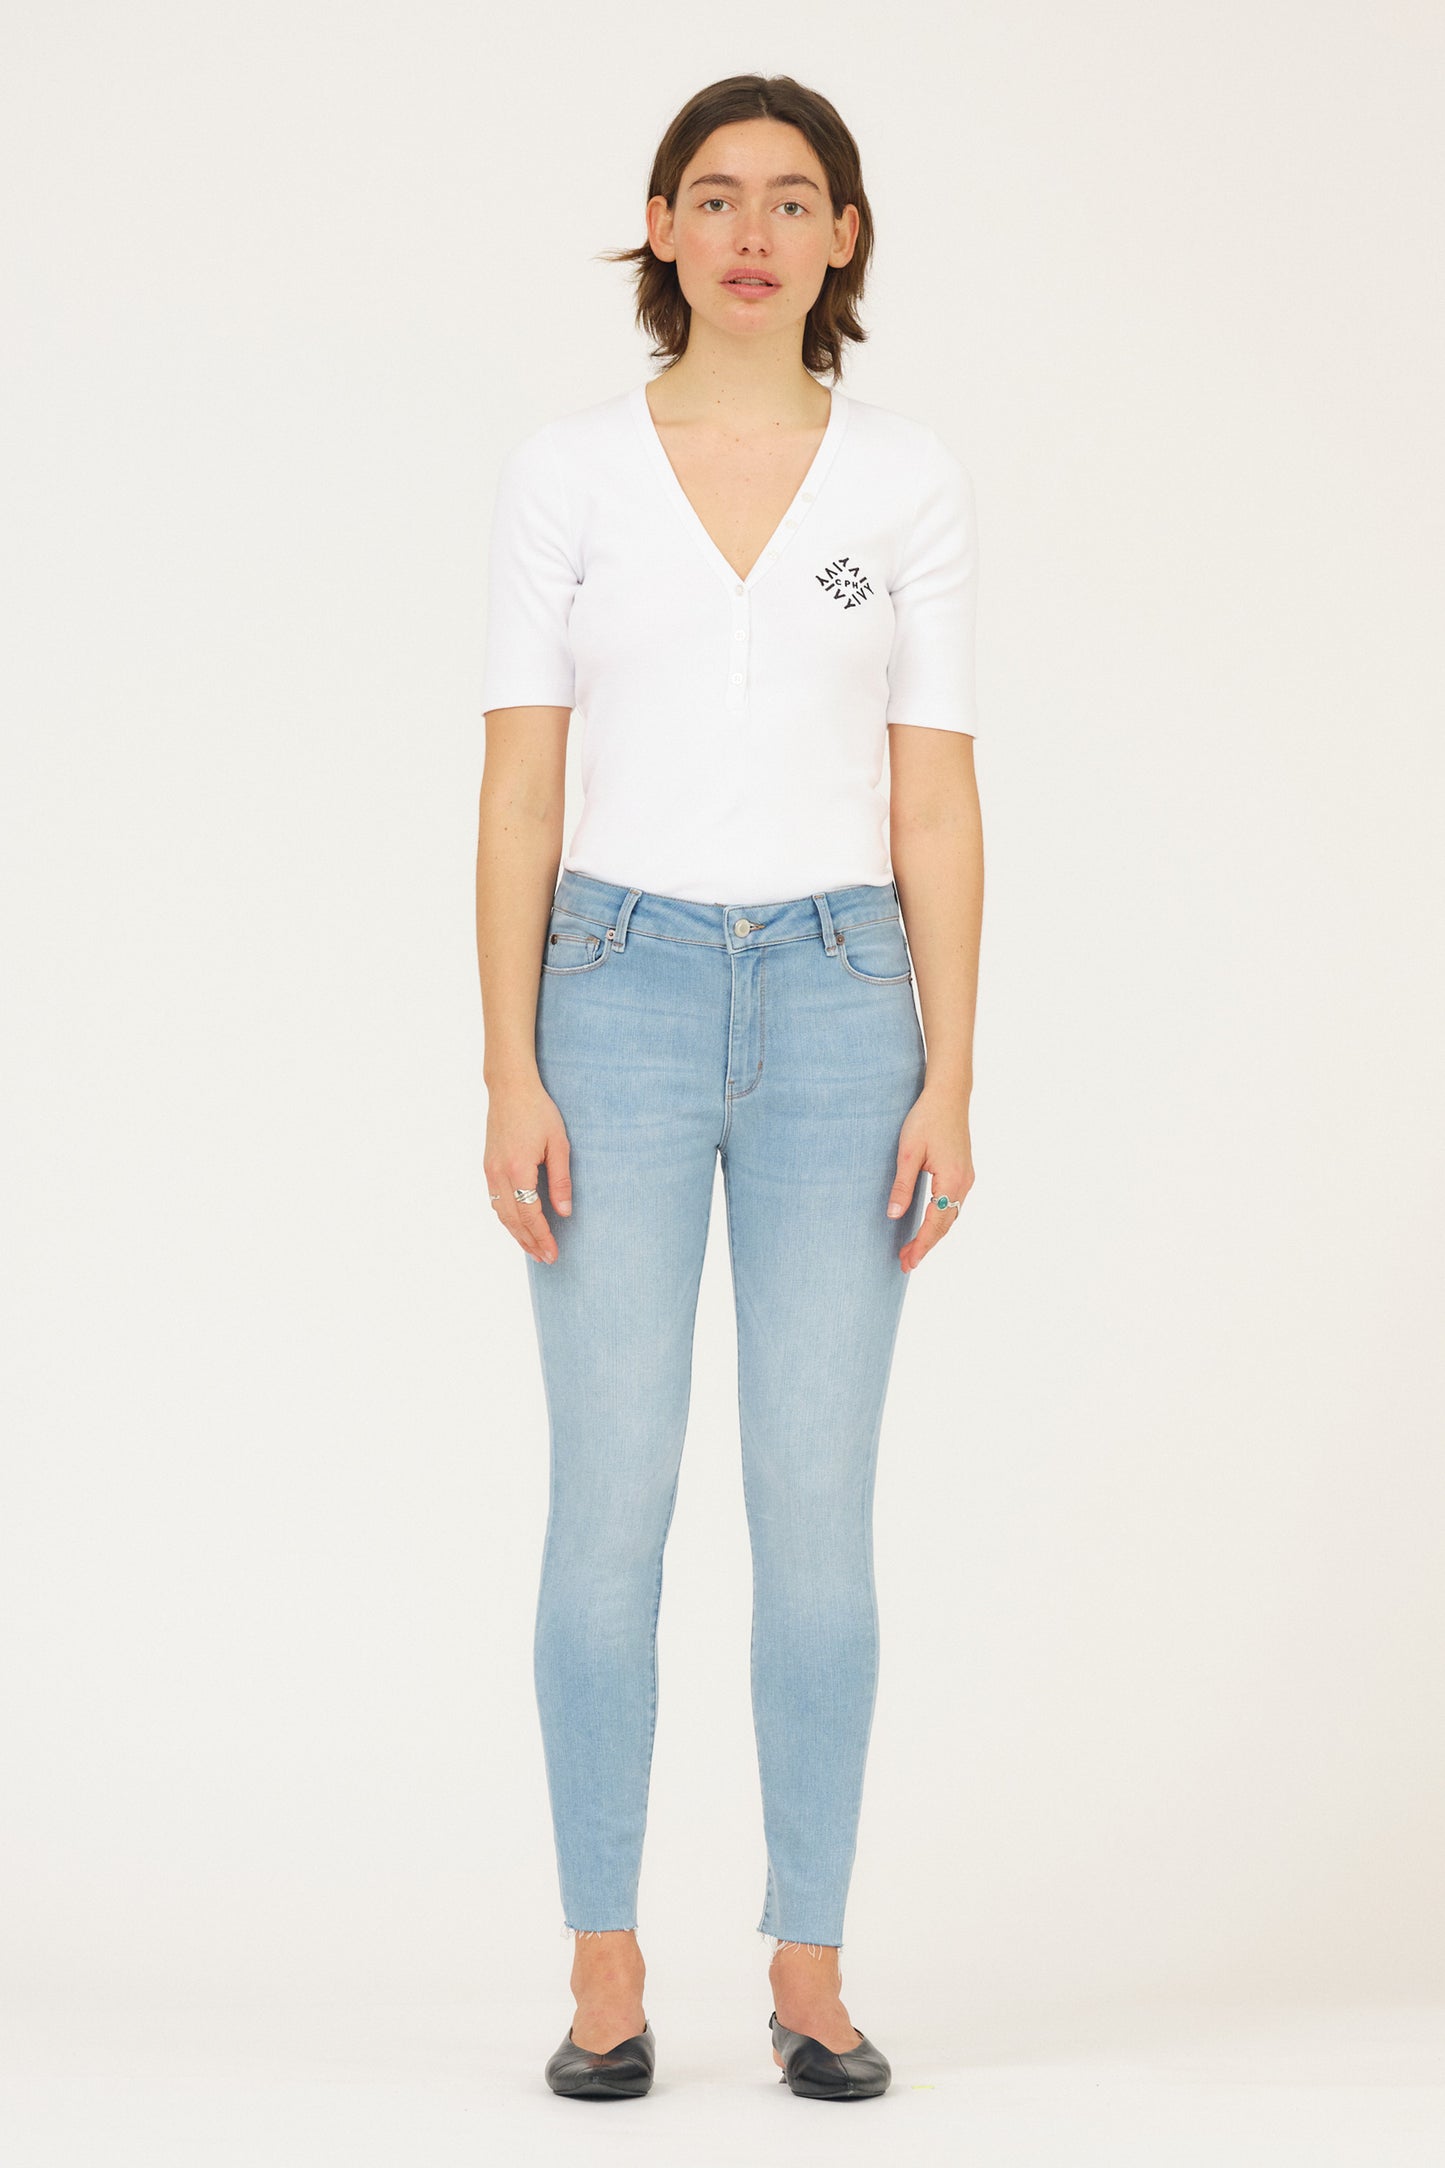 IVY Copenhagen IVY-Alexa Jeans Wash Lecco Jeans & Pants 51 Denim Blue